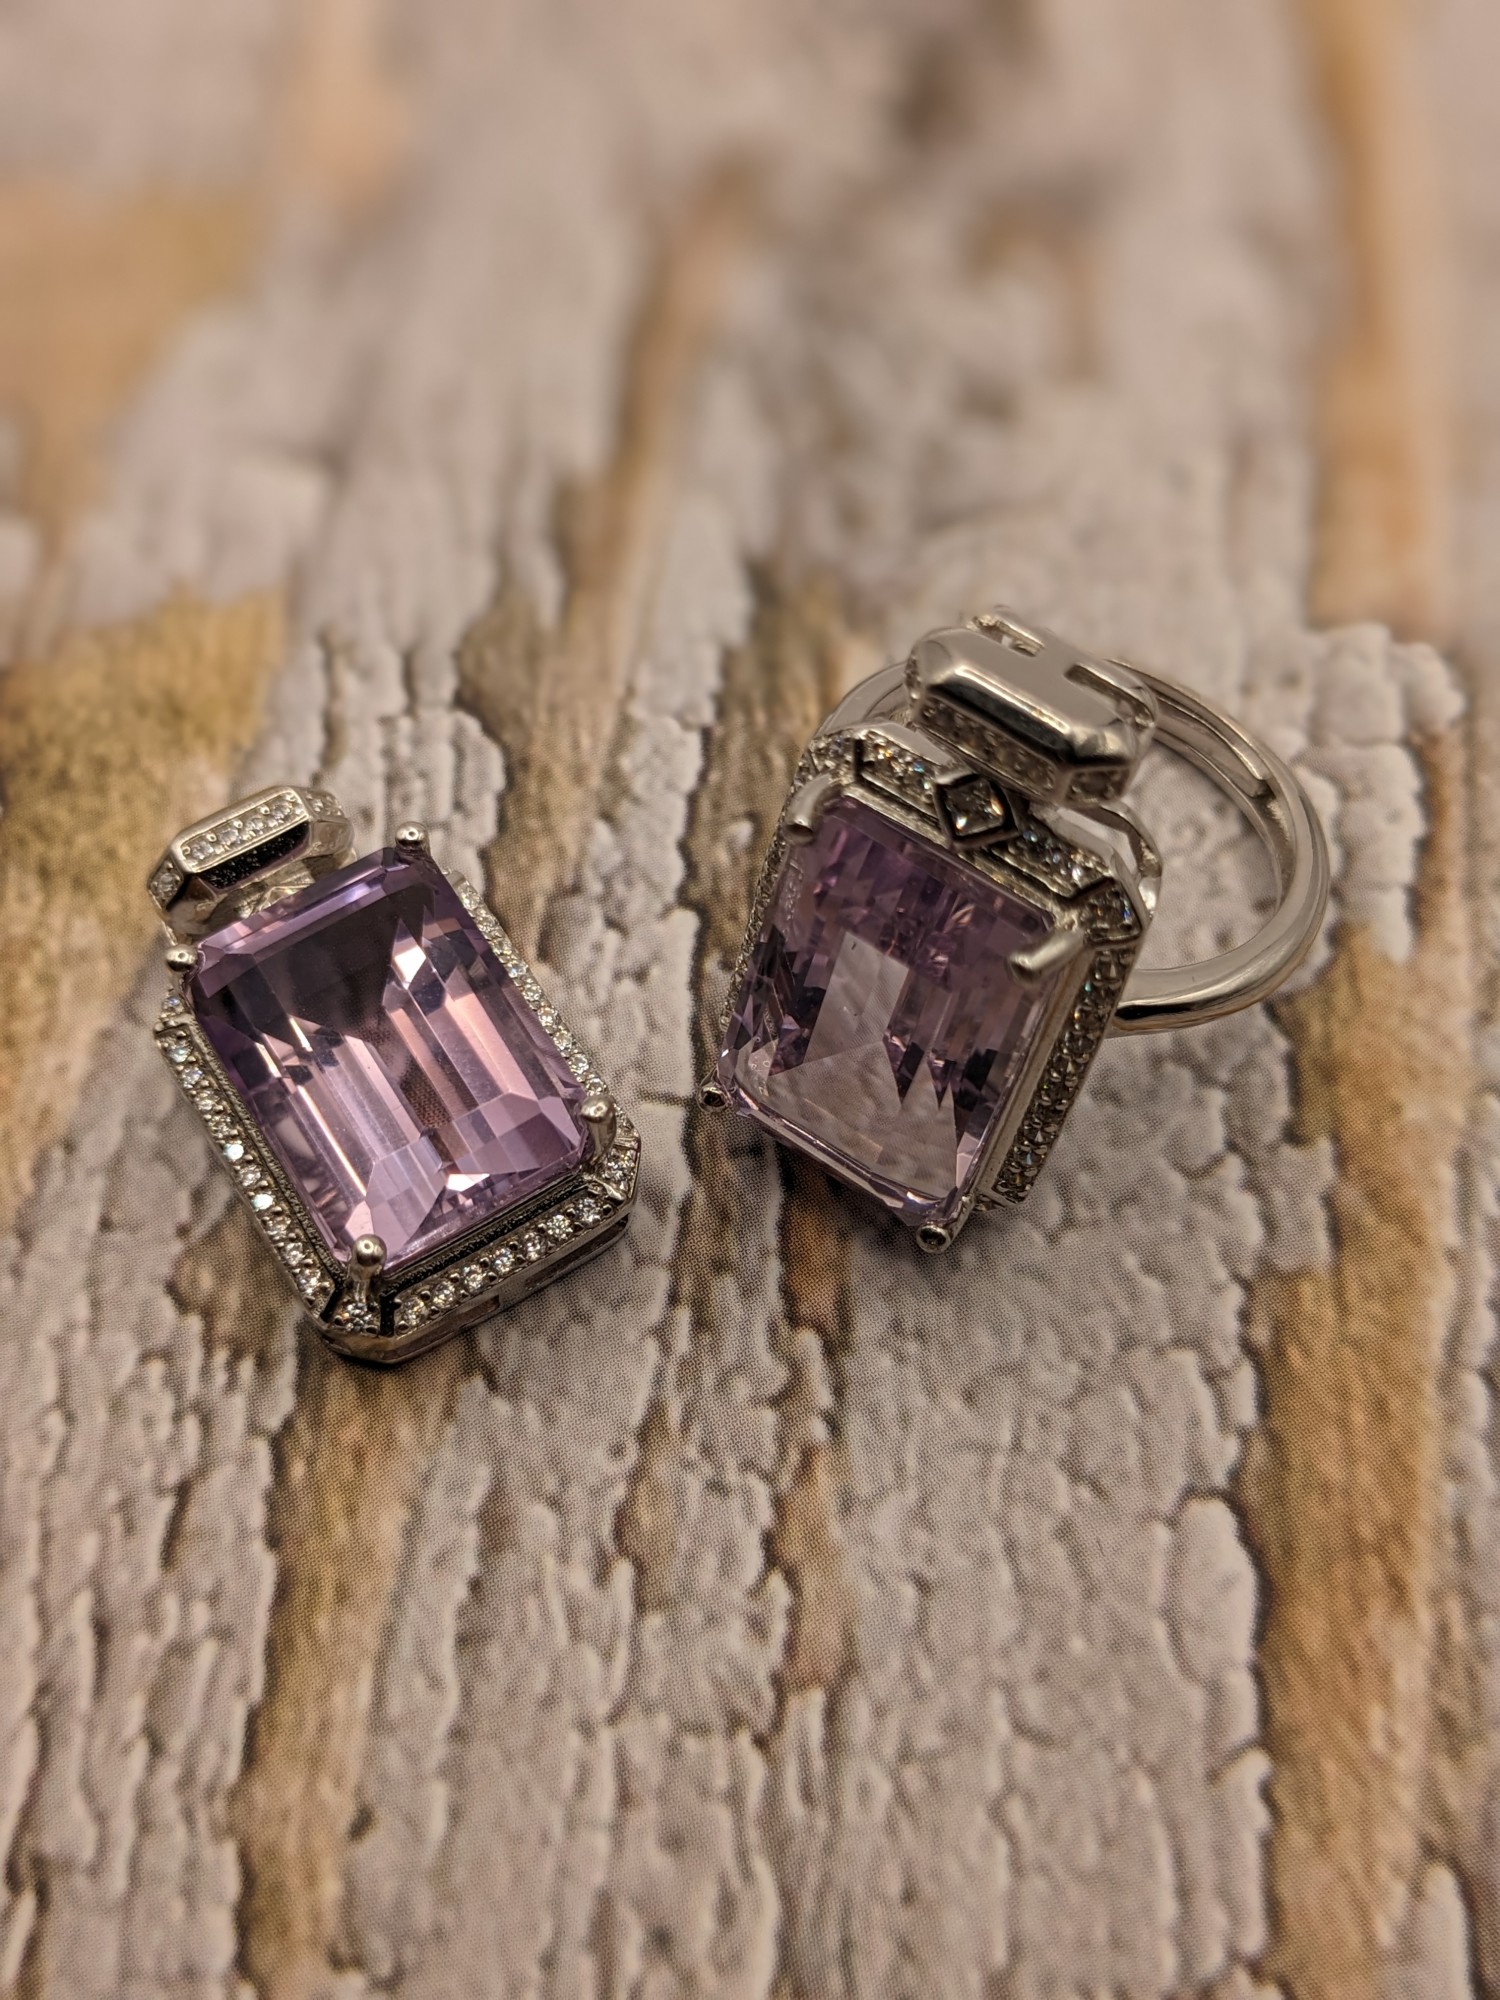 紫玉晶鑽切方鑽~項墜、戒子.925純銀包台套組 編號G24-4-4-6411